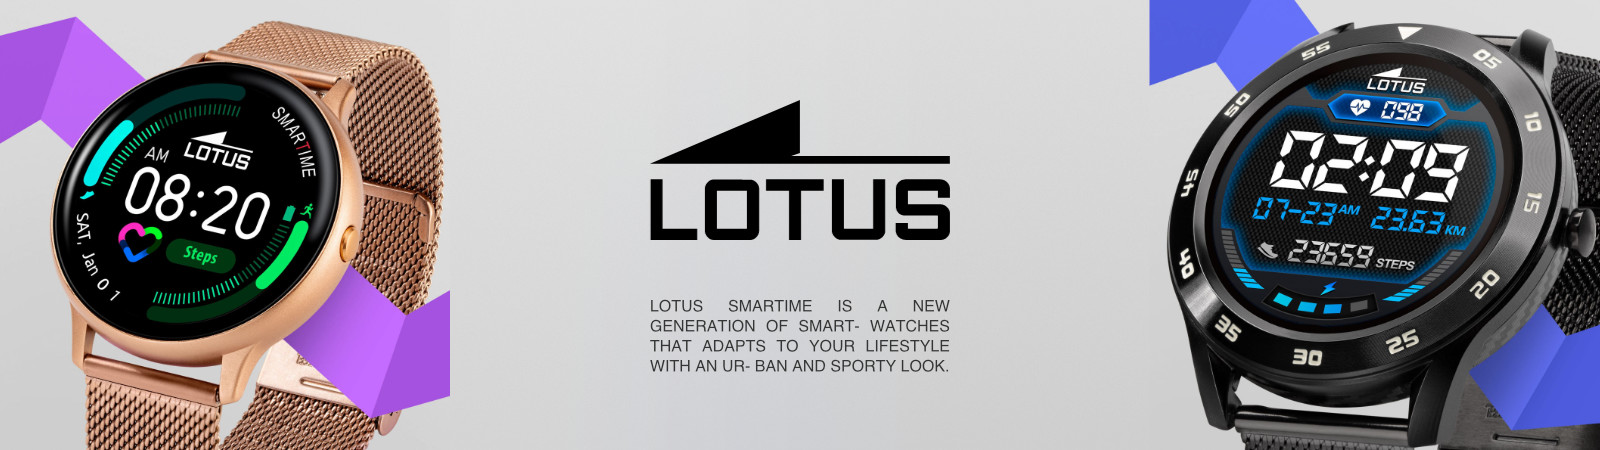 Lotus Smart Time